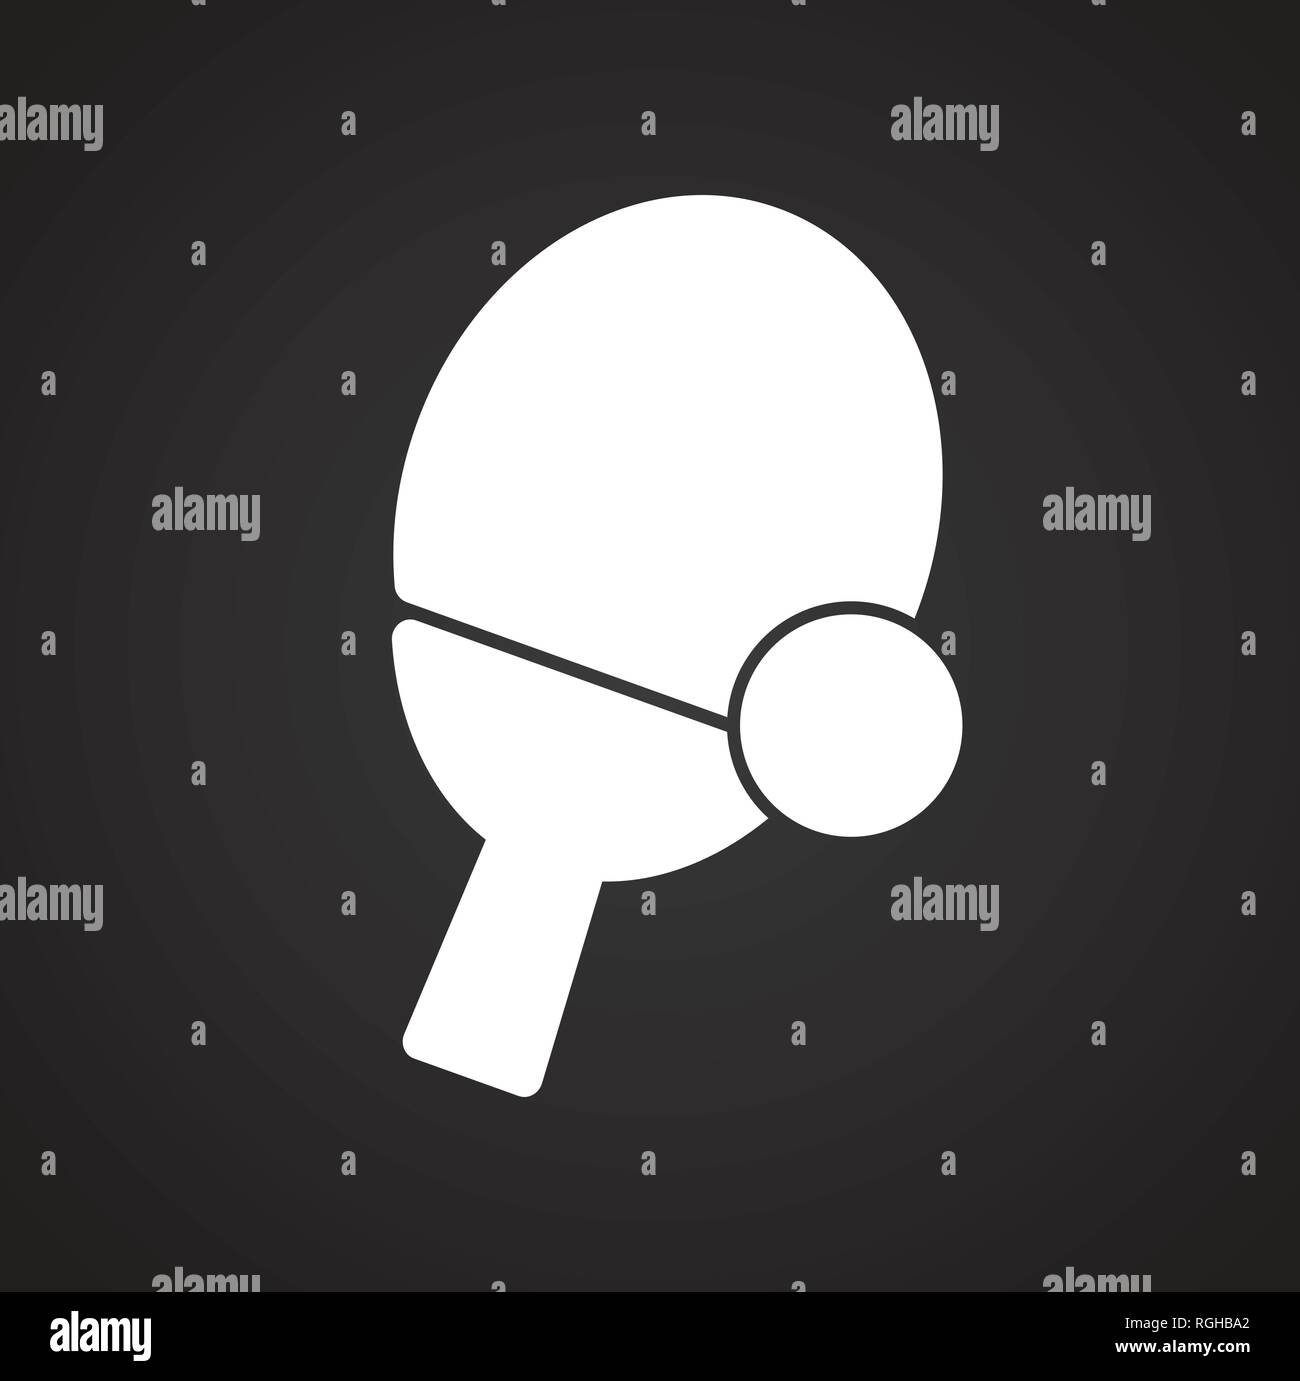 Ping Pong Icona sullo sfondo nero per grafica e web design, moderno vettore semplice segno. Concetto di Internet. Il simbolo alla moda per il design del sito web o del pulsante mobile app. Illustrazione Vettoriale